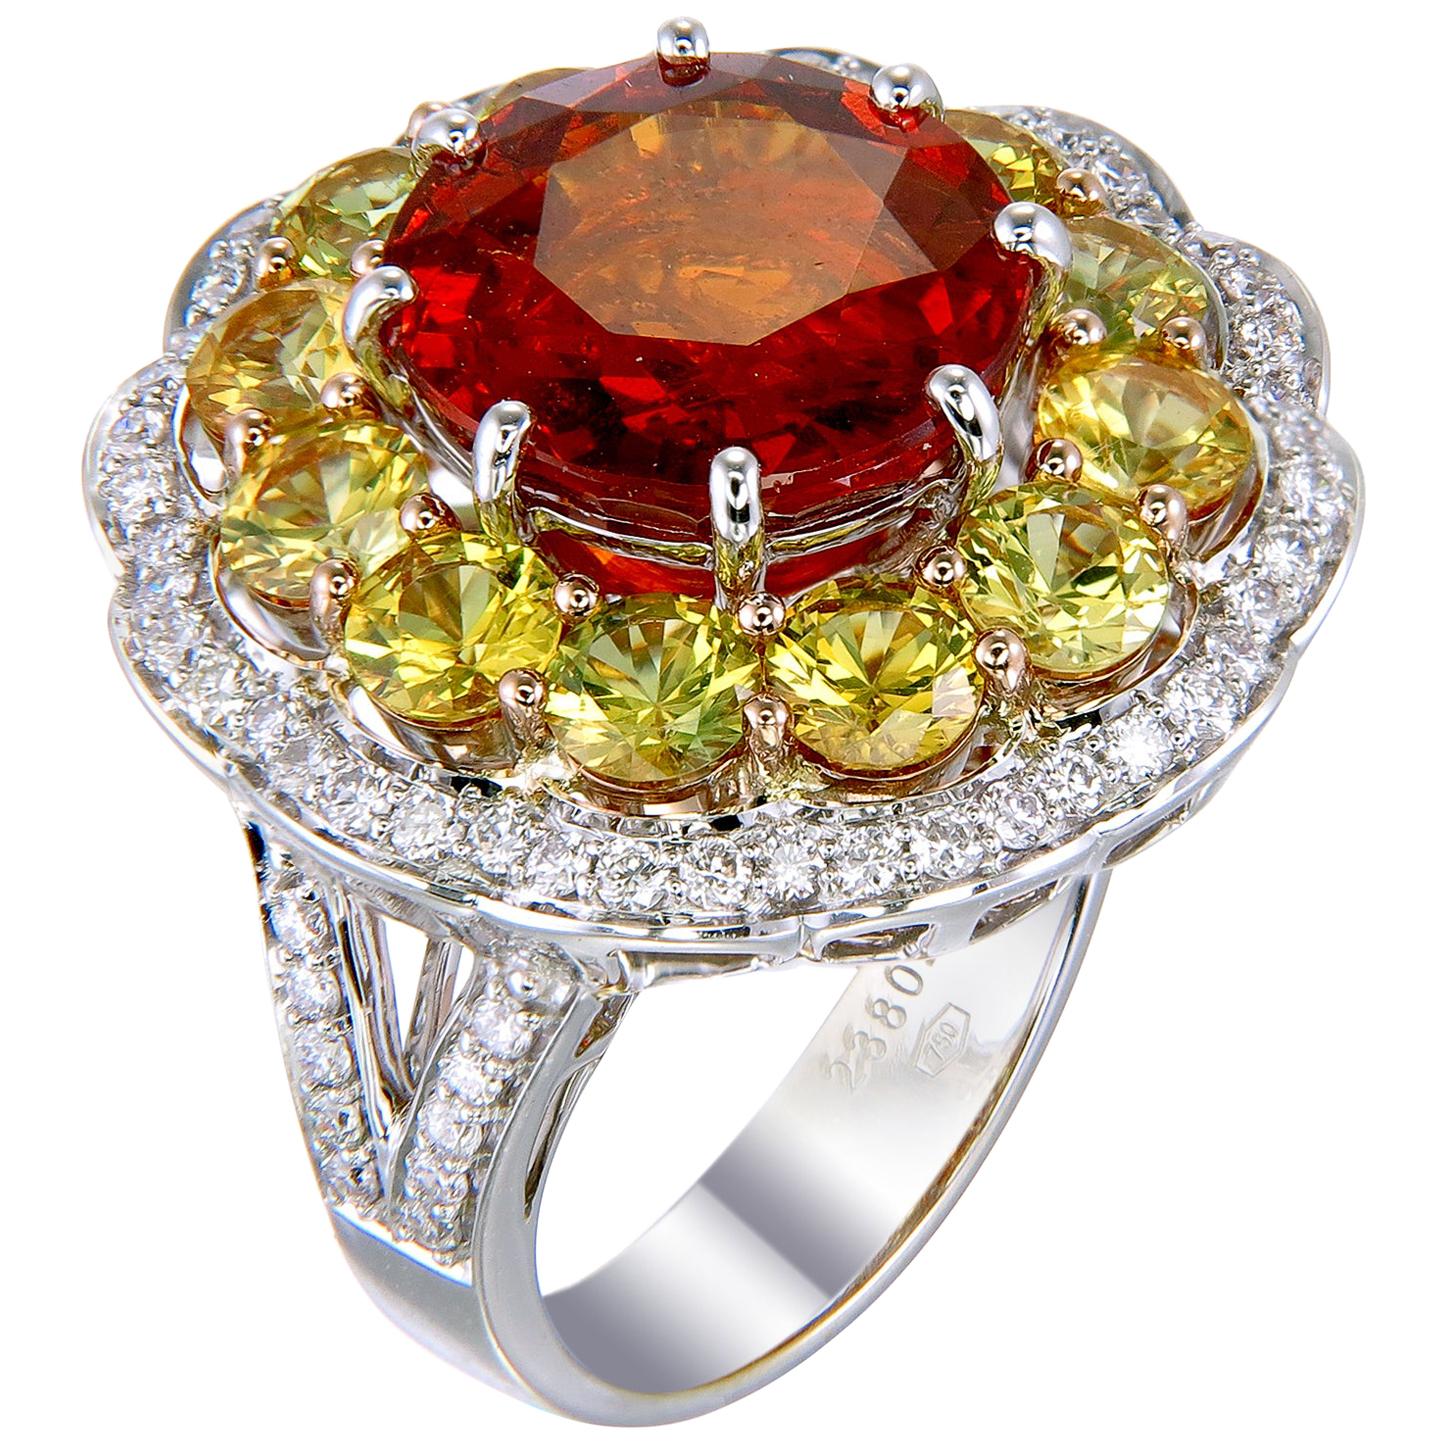 Zorab Creation-Merry-Go-Round 8,38 Karat Spessartit Granat und Diamant Ring